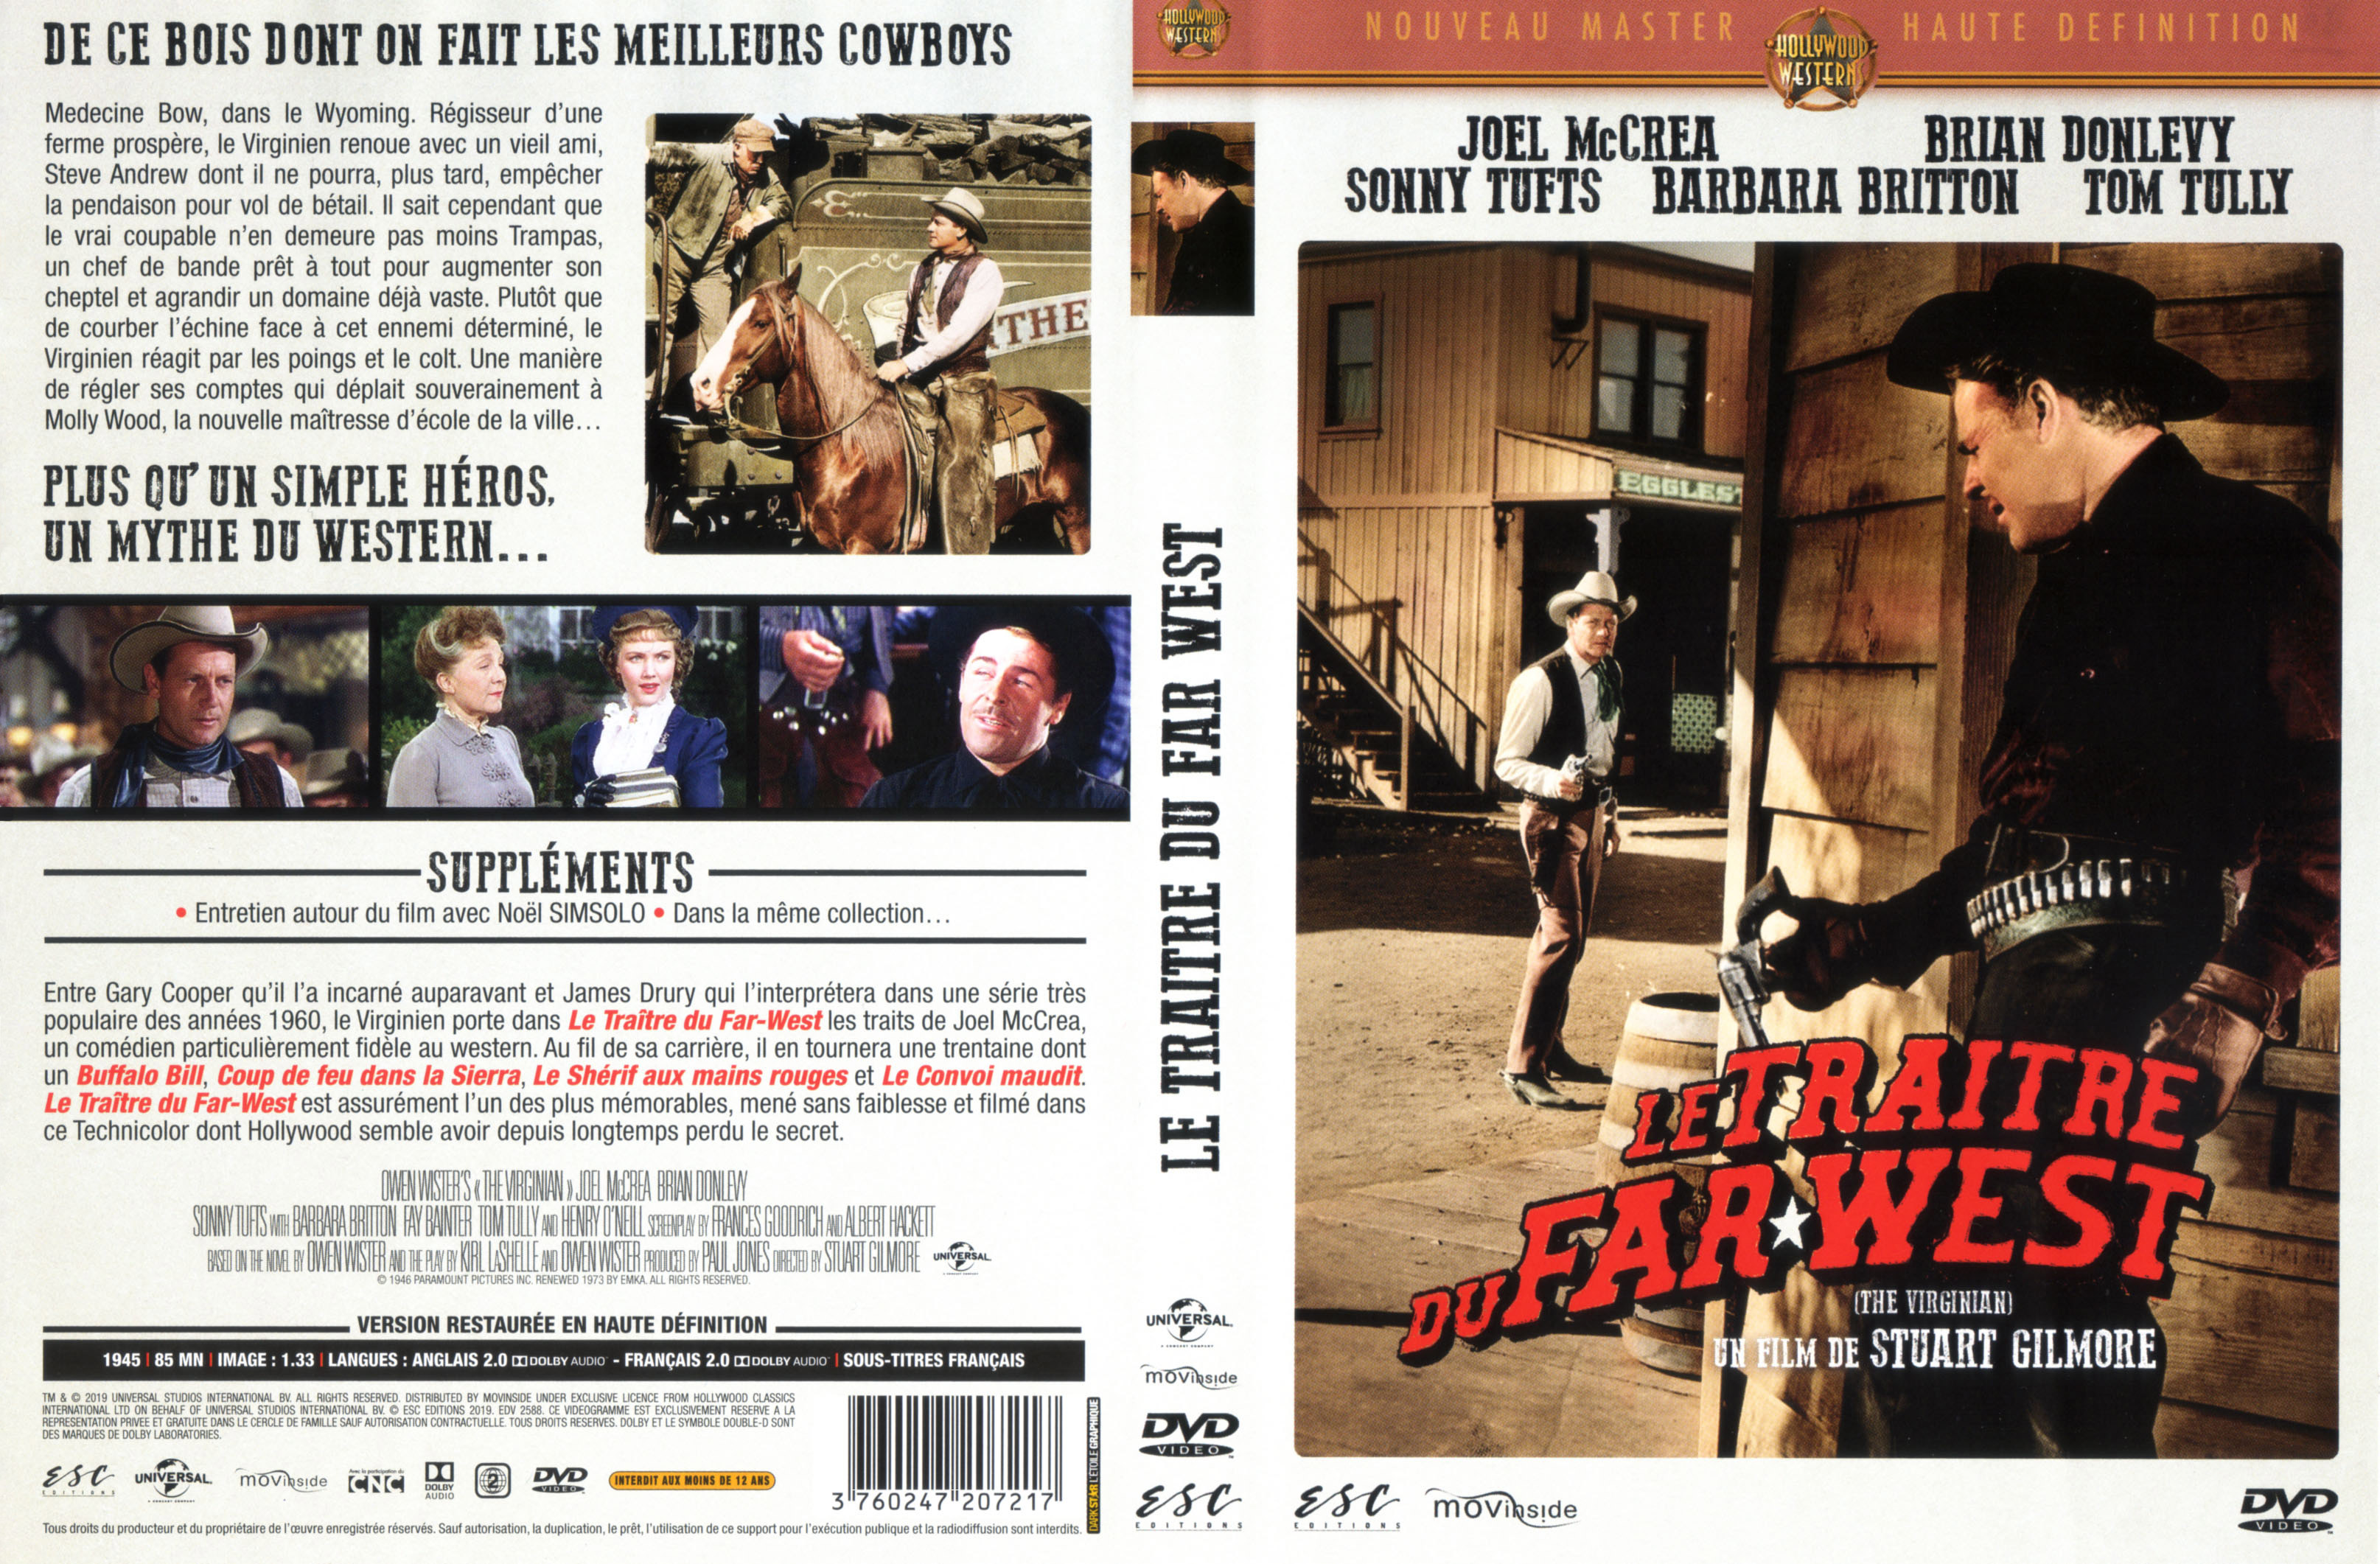 Jaquette DVD Le traitre du Far West v2